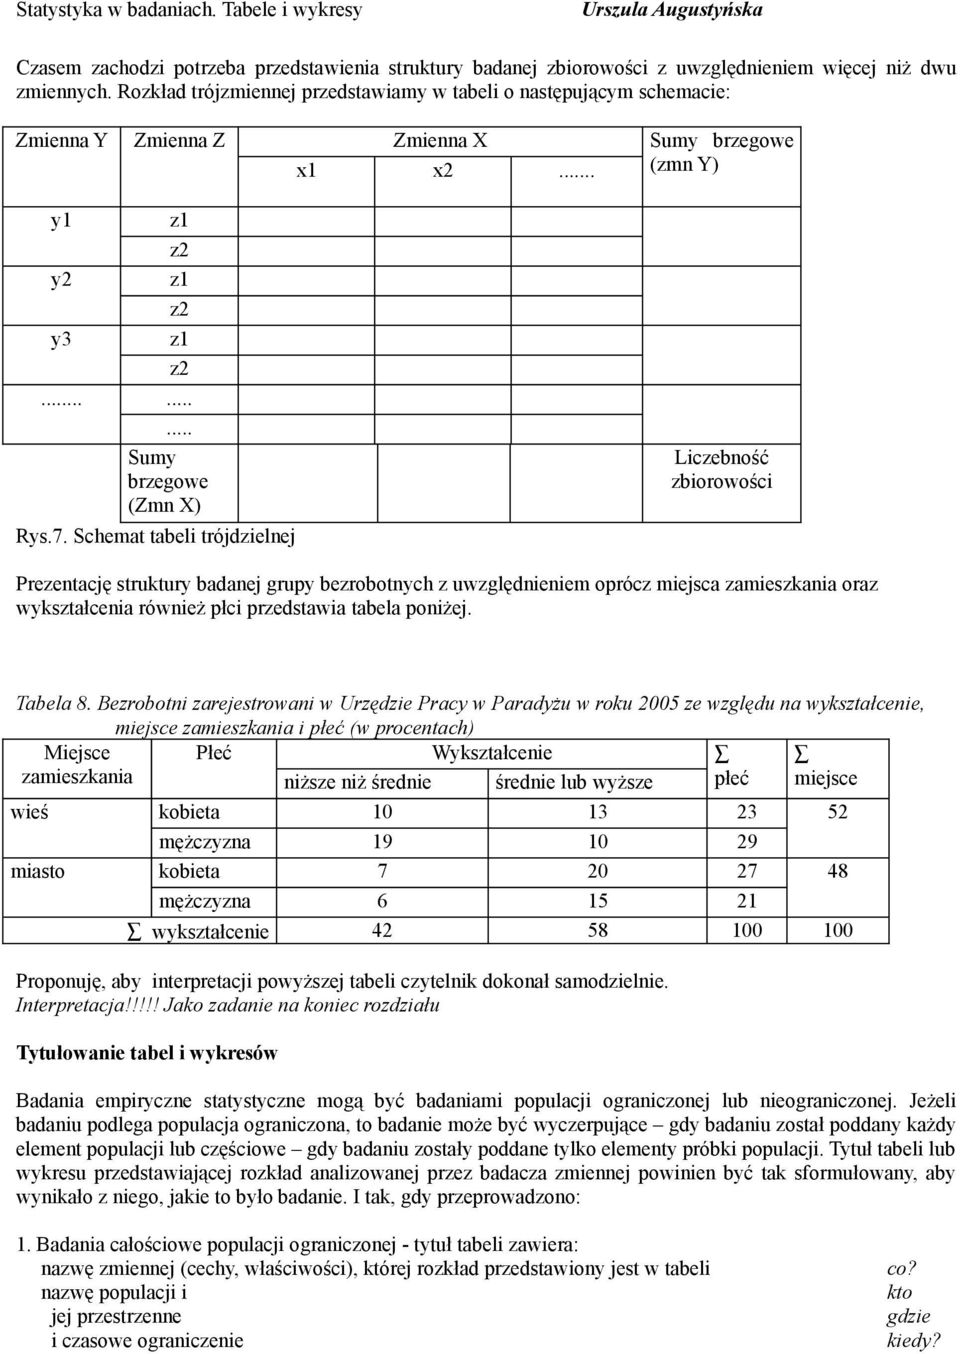 Schemat tabeli trójdzielnej Sumy brzegowe (zmn Y) zbiorowości Prezentację struktury badanej grupy bezrobotnych z uwzględnieniem oprócz miejsca zamieszkania oraz wykształcenia również płci przedstawia